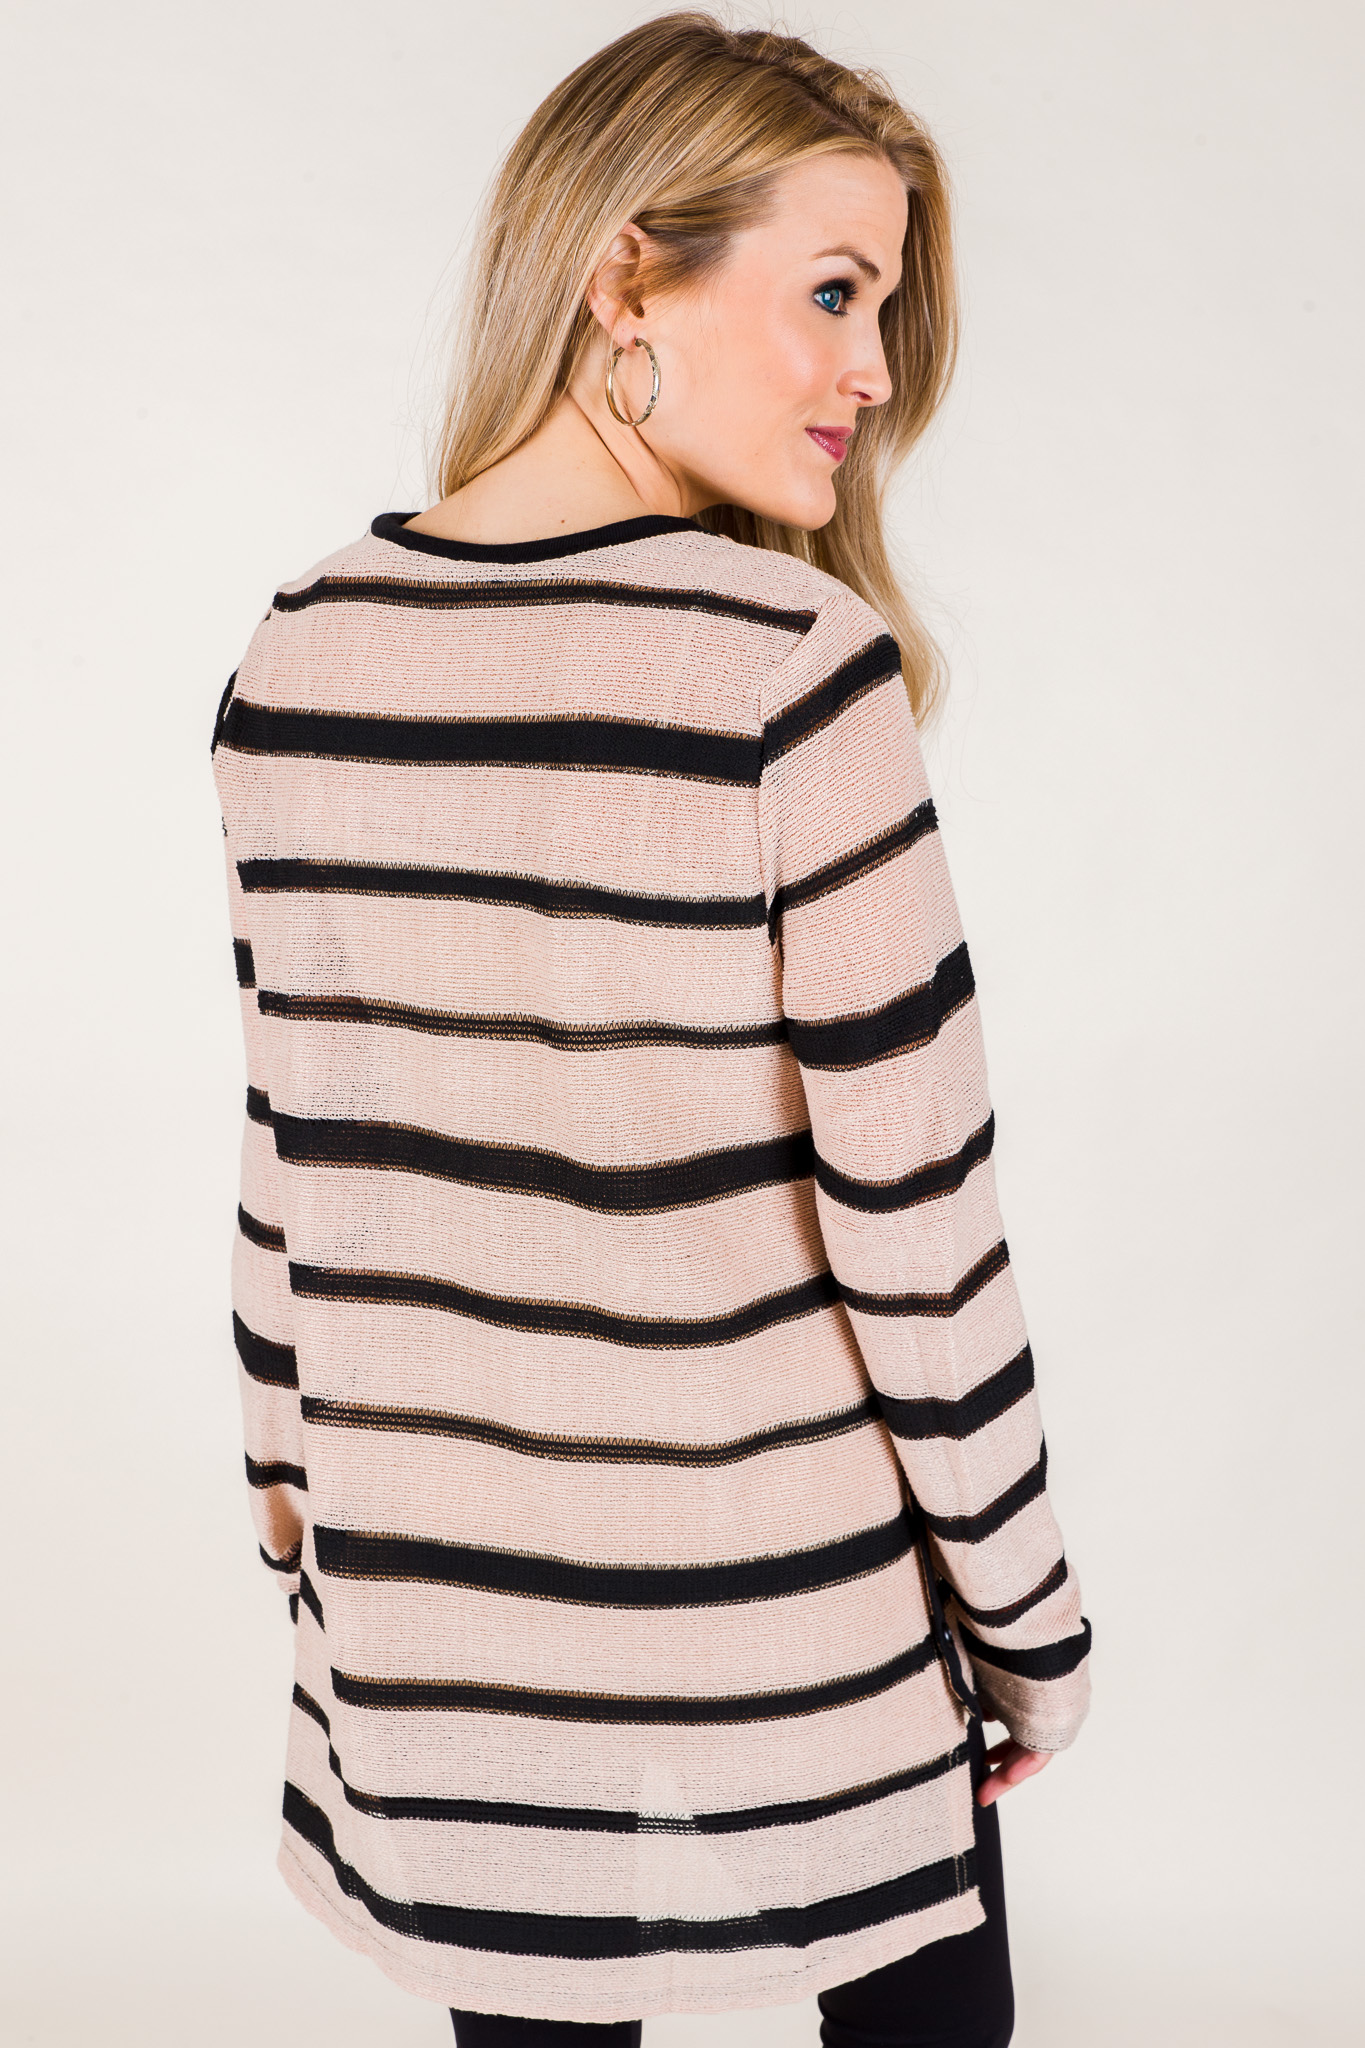 Sammie Striped Sweater